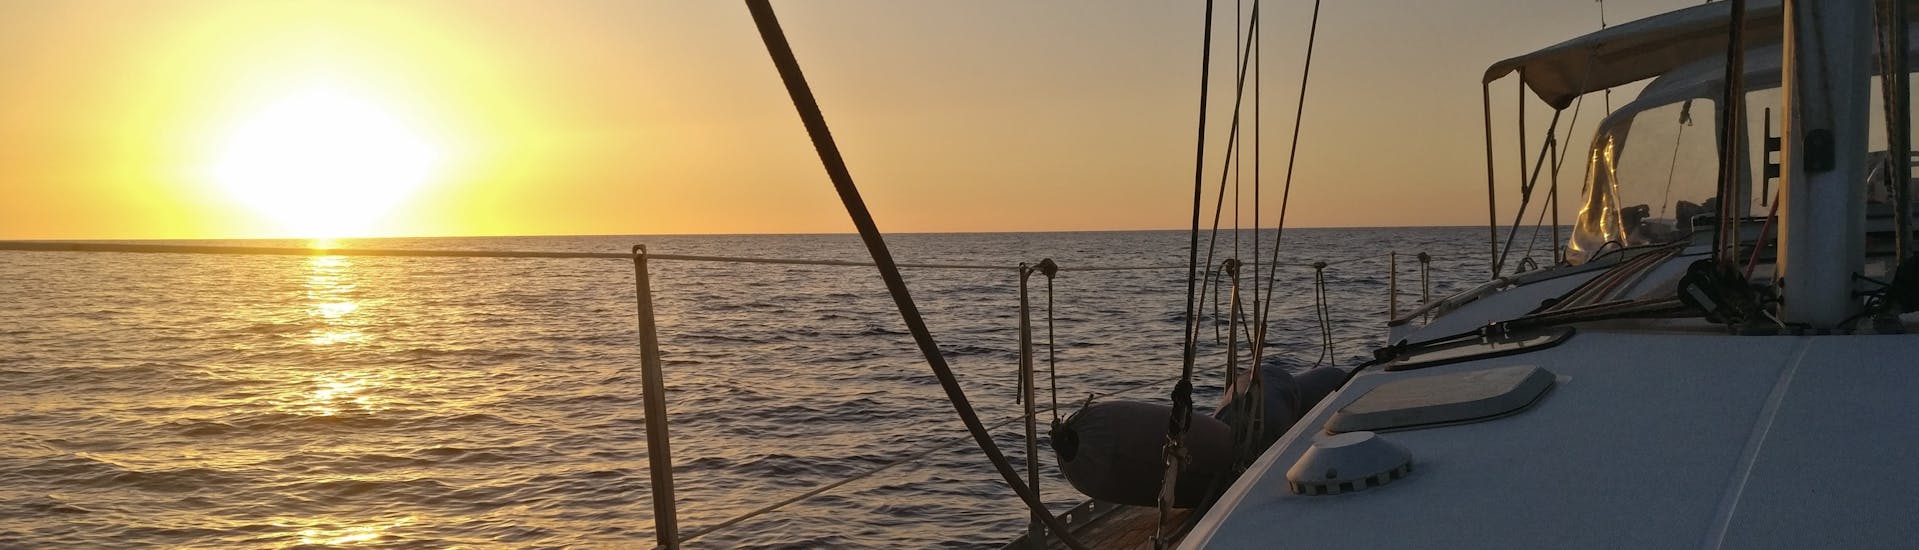 Vue de la mer au coucher du soleil depuis un bateau de Quarantesimo Parallelo Leuca.